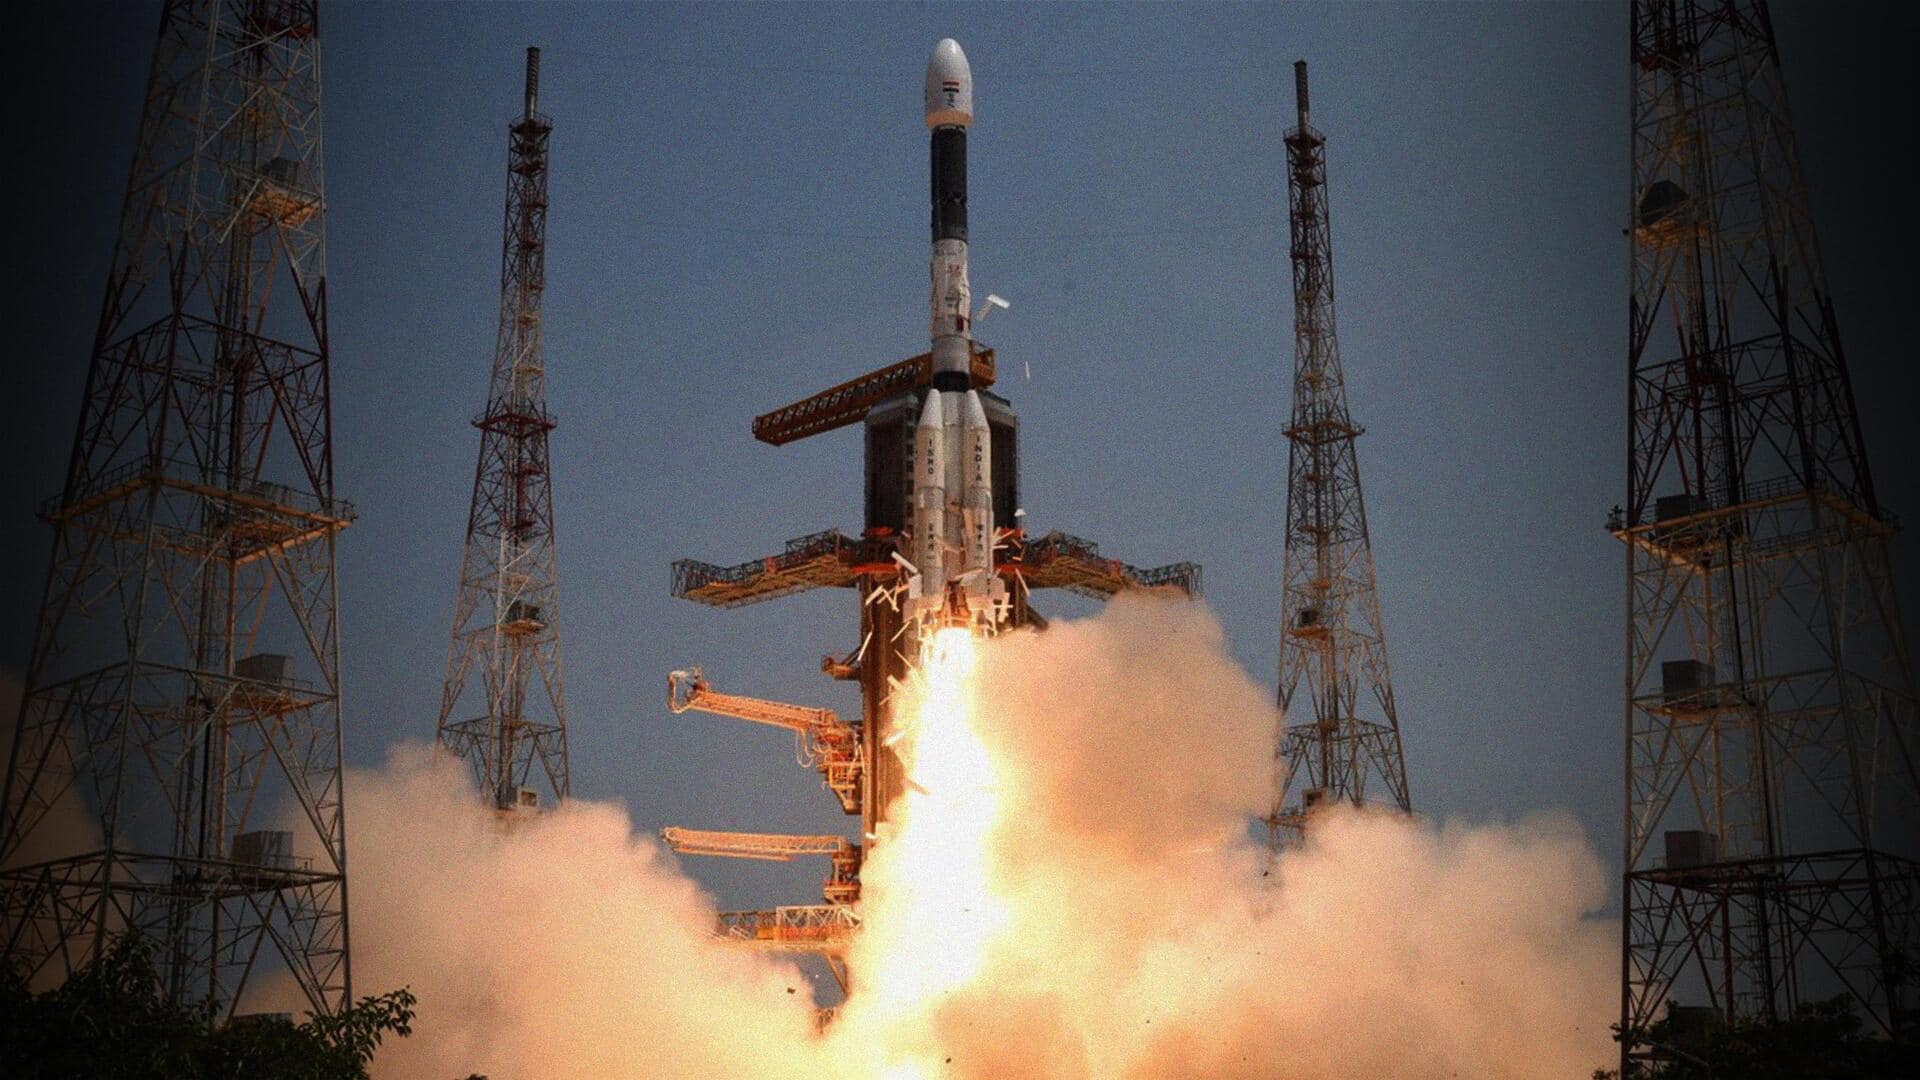 श्रीहरिकोटा से हुई चंद्रयान-3 की सफल लॉन्चिंग, जानिए इस जगह से जुड़ी महत्वपूर्ण बातें 